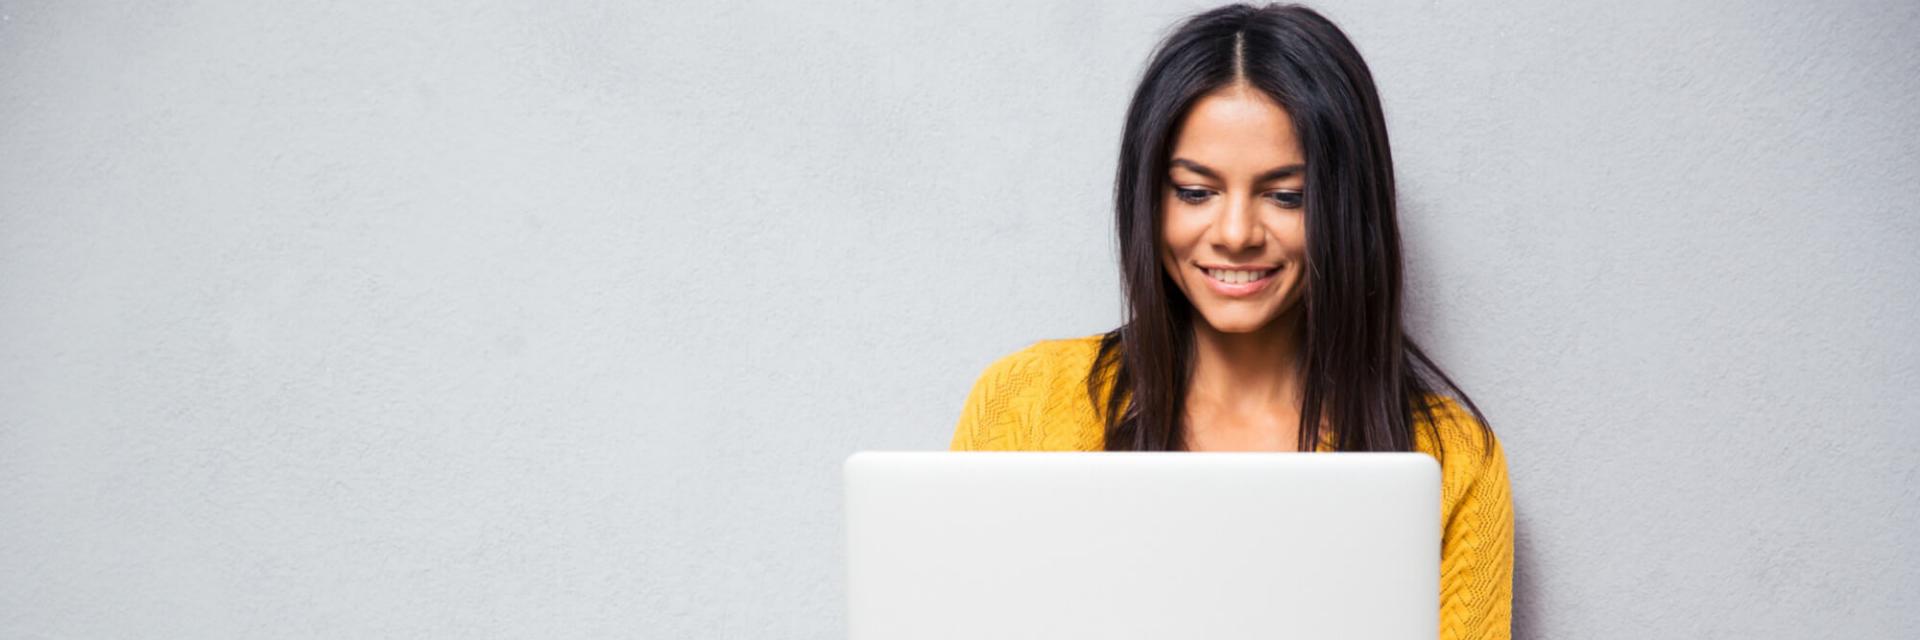 Smiling women using a laptop.